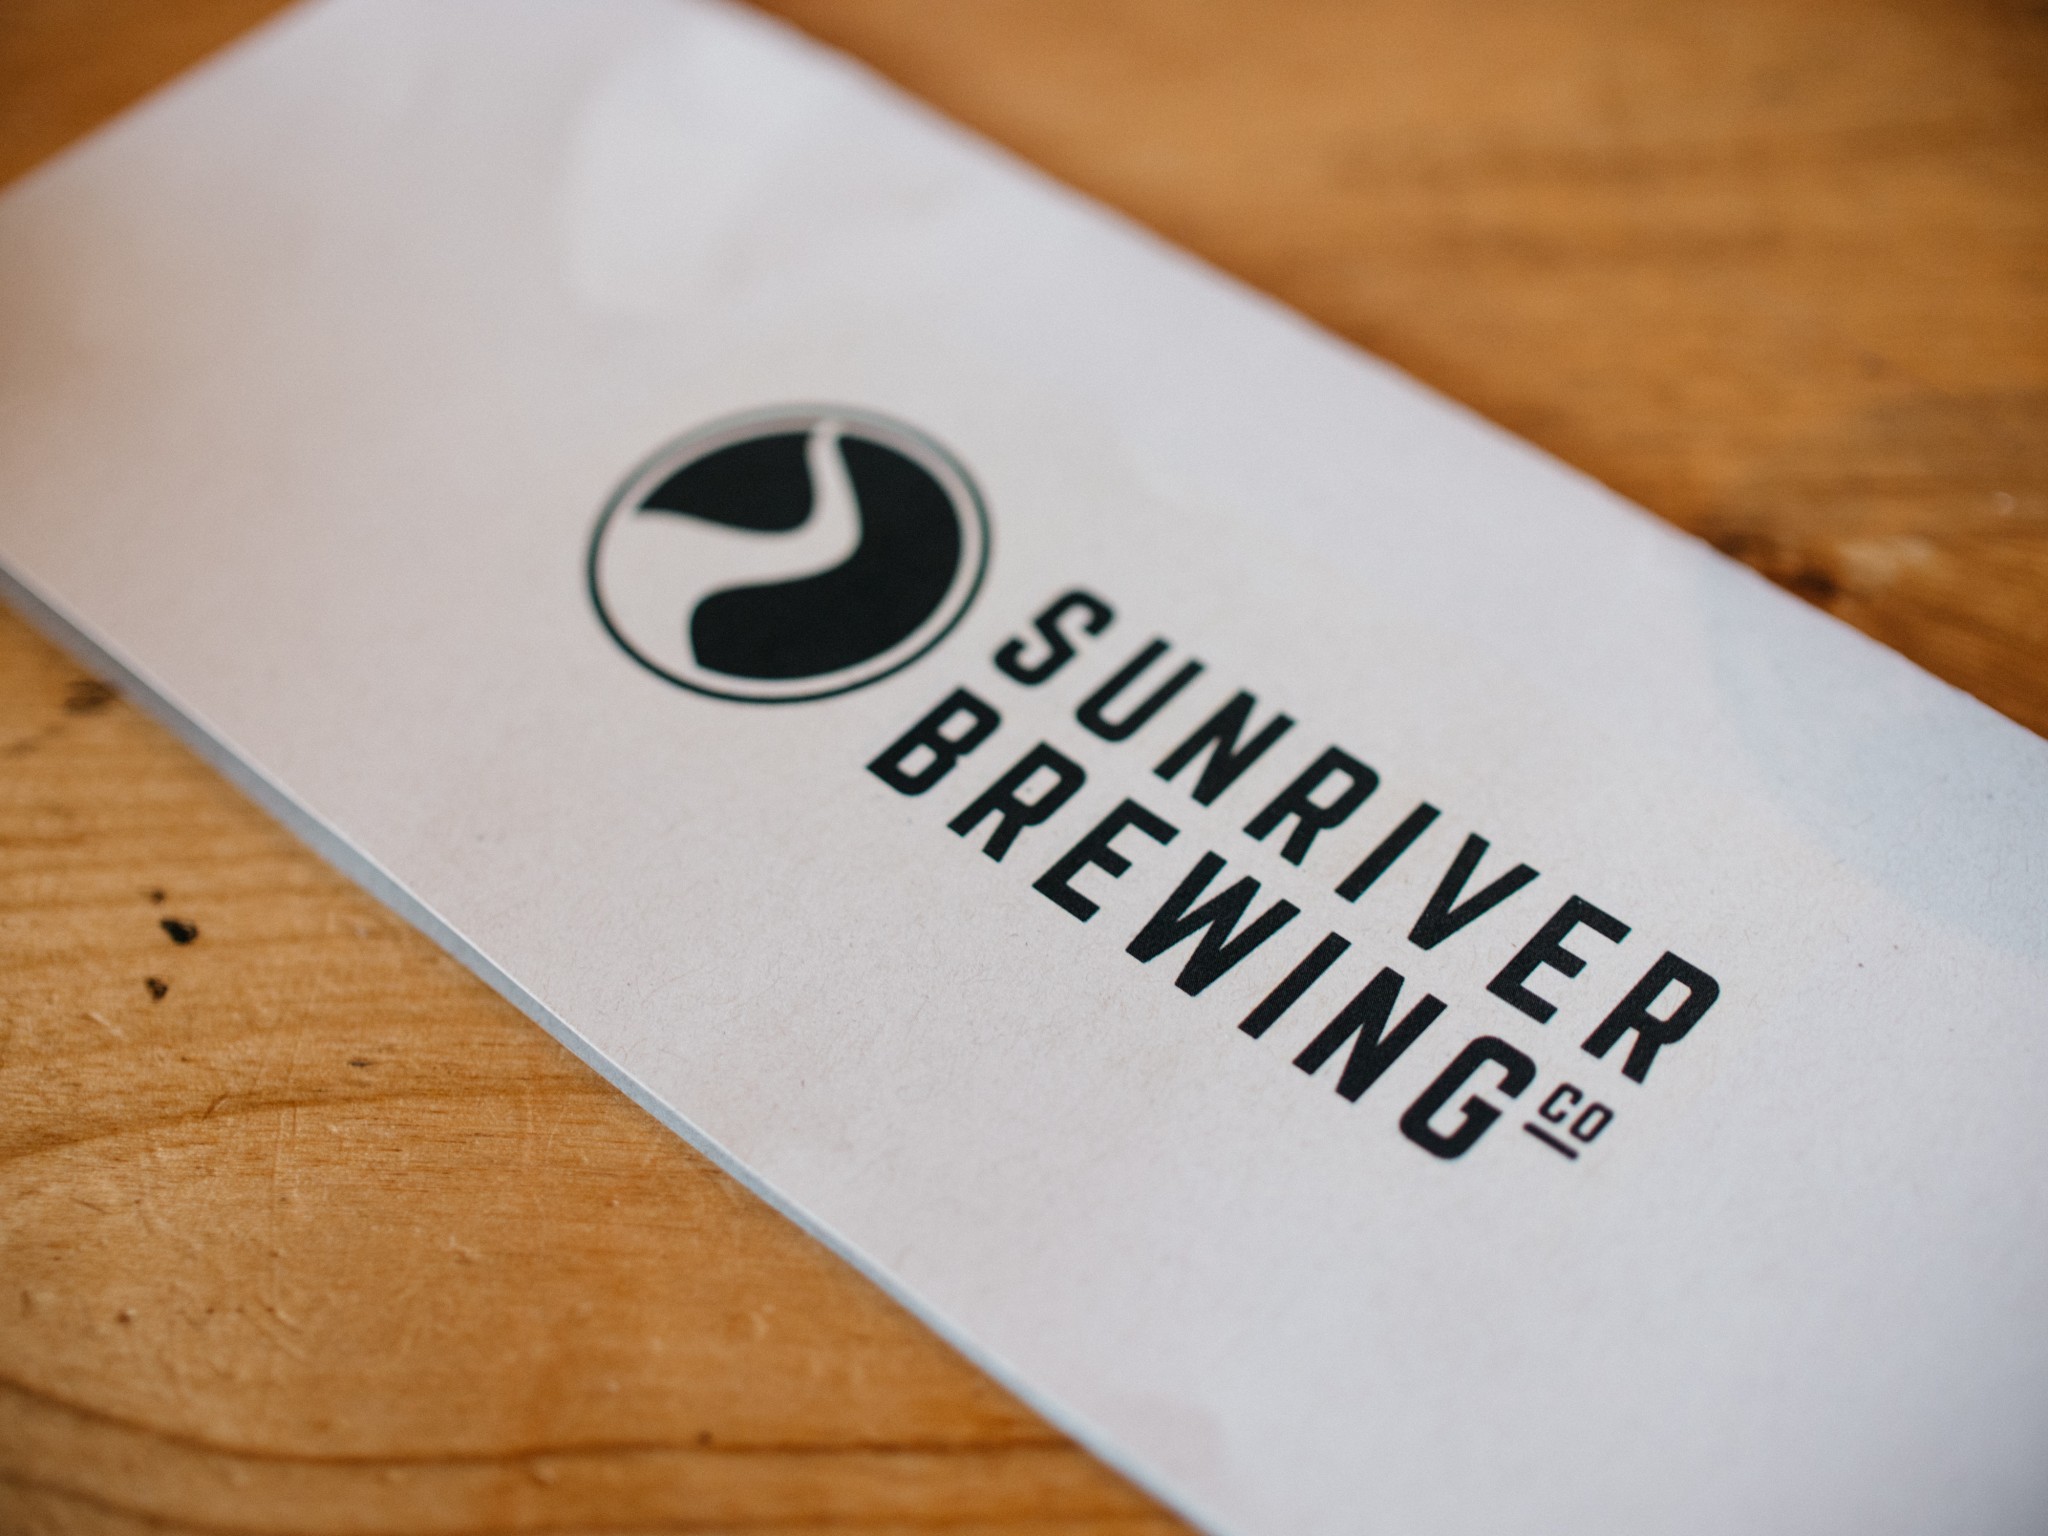 Sunriver Brewing Co.